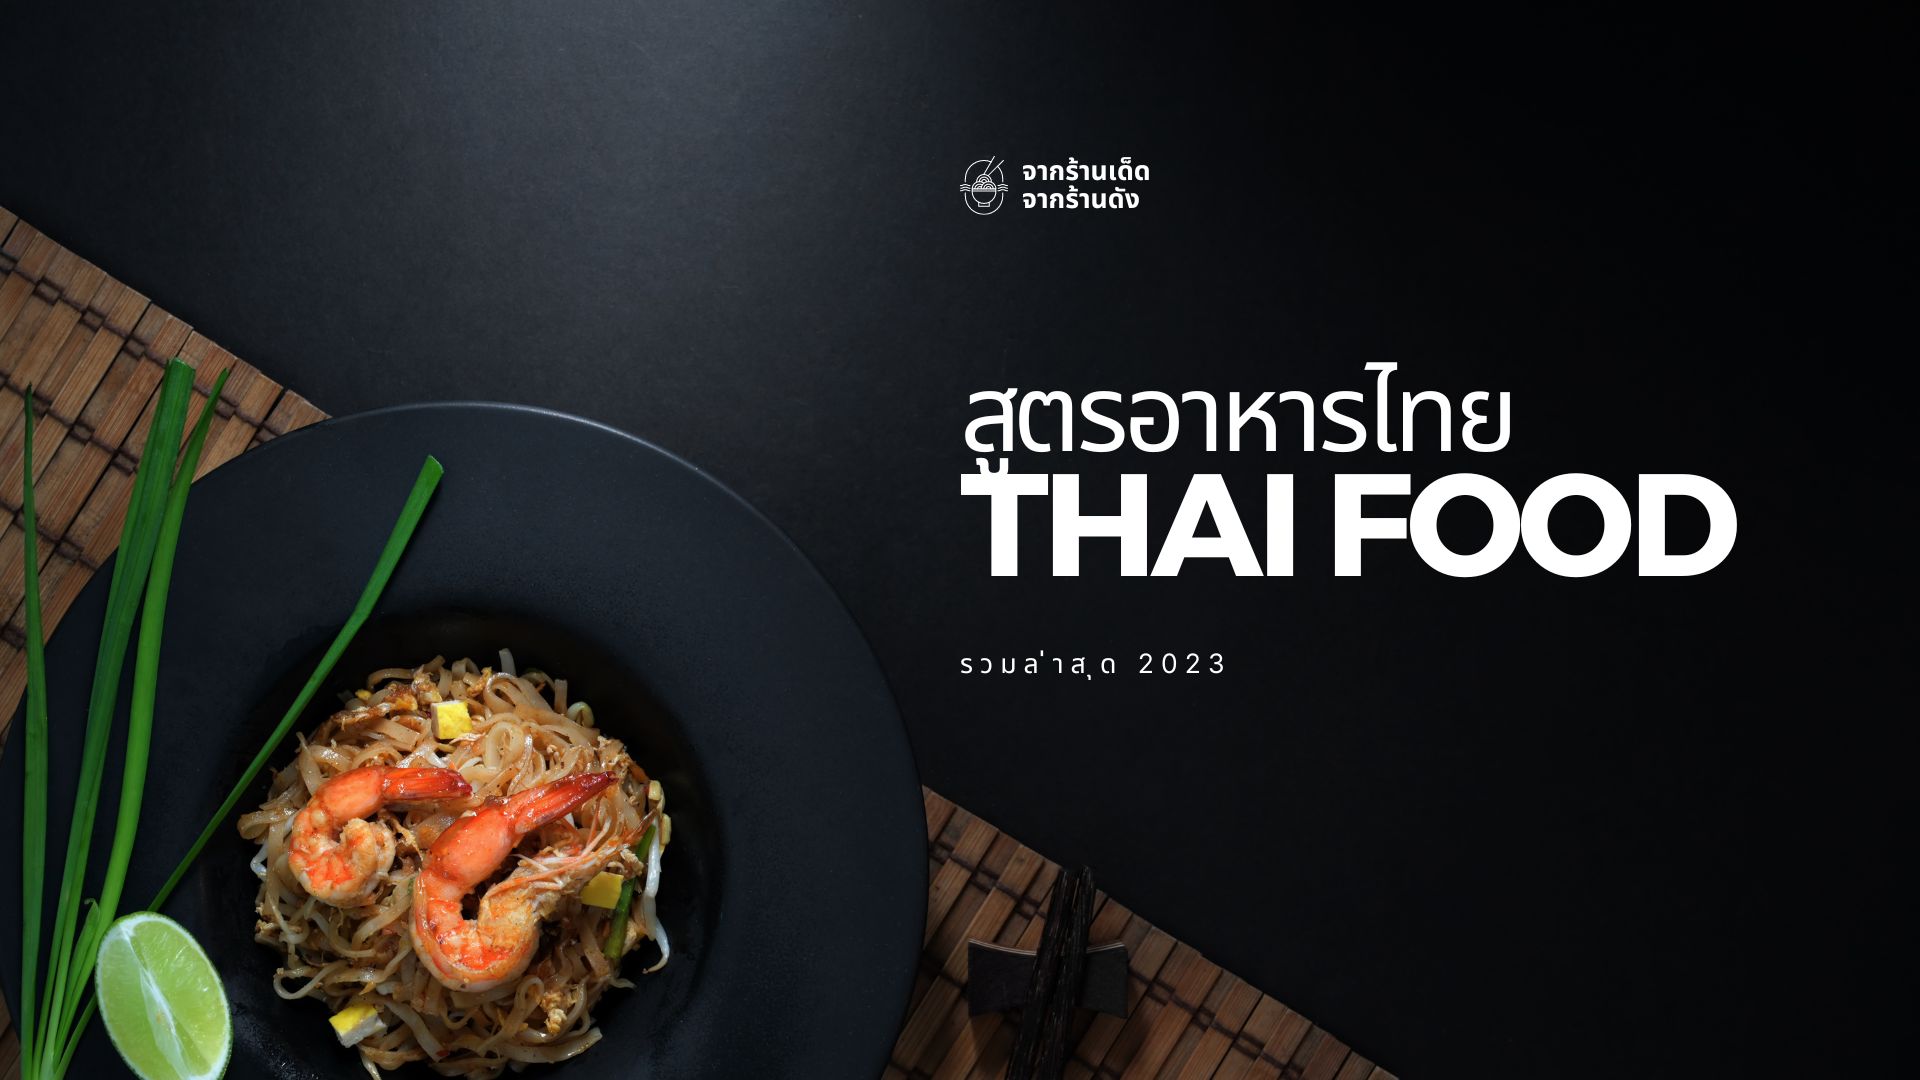 สูตรอาหารไทยอร่อยๆ - แชร์ความเป็นไทยของรสชาติกับเวปสูตรอาหารไทย